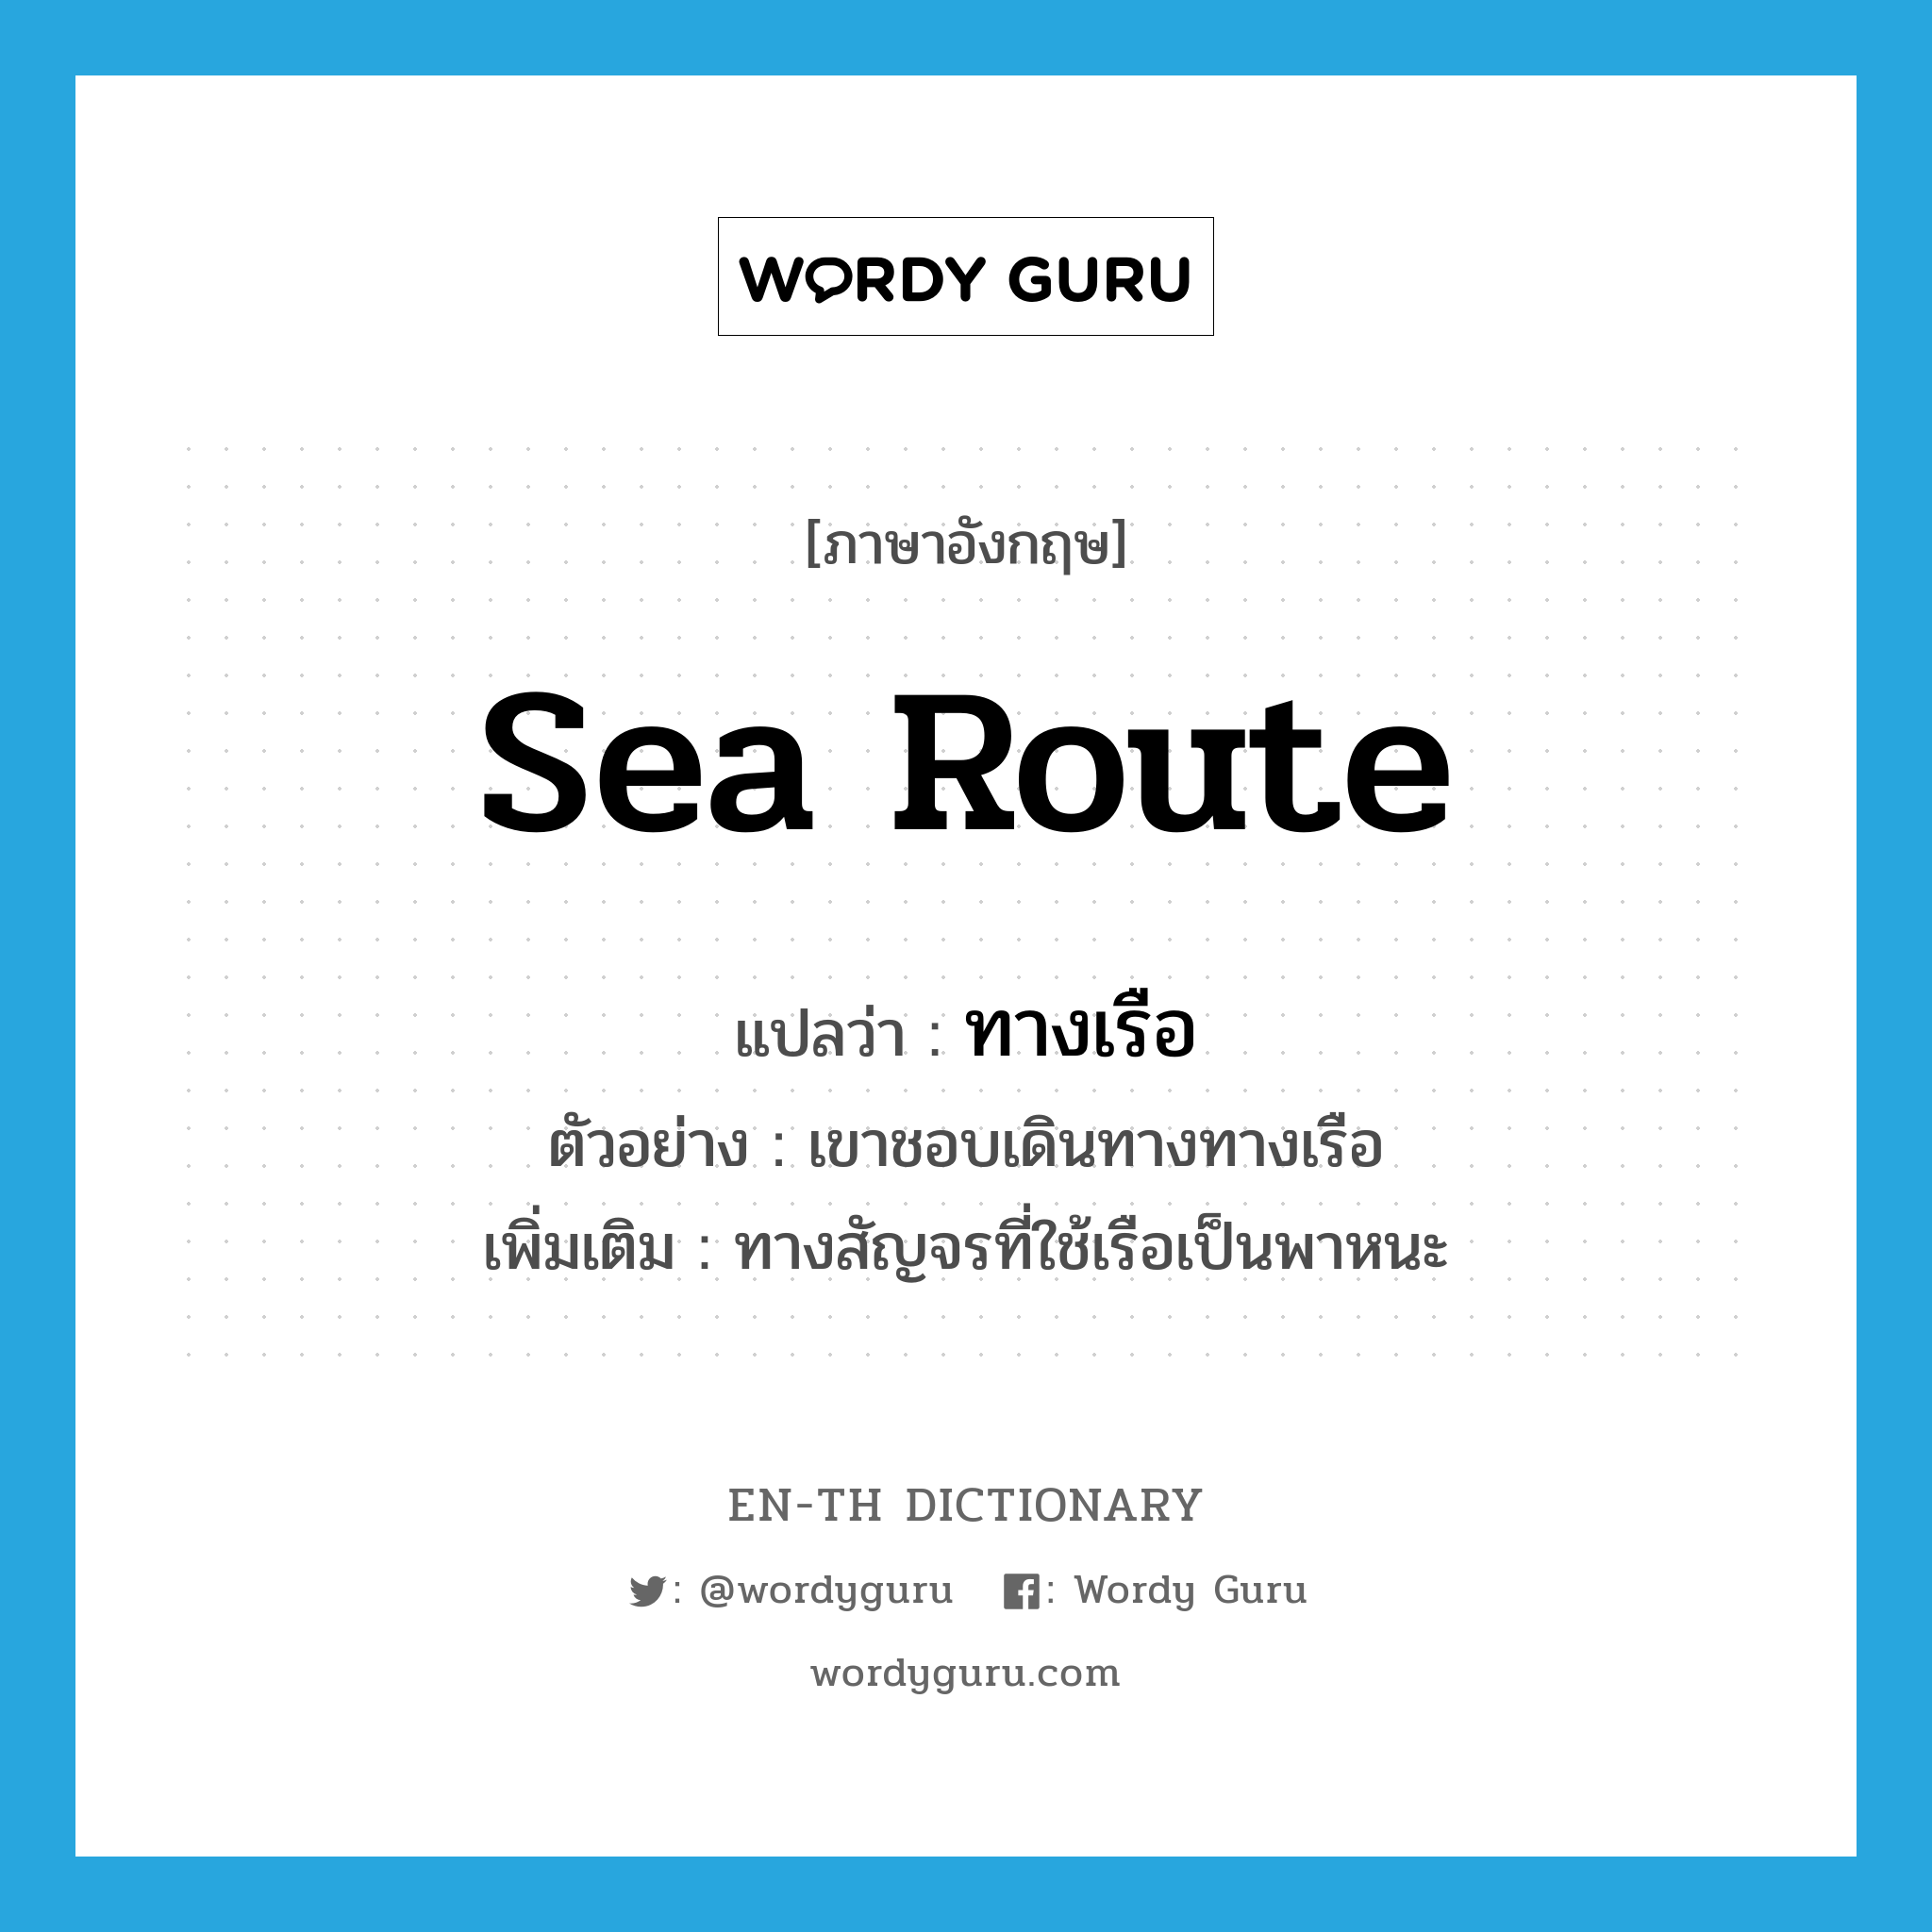 sea route แปลว่า?, คำศัพท์ภาษาอังกฤษ sea route แปลว่า ทางเรือ ประเภท N ตัวอย่าง เขาชอบเดินทางทางเรือ เพิ่มเติม ทางสัญจรที่ใช้เรือเป็นพาหนะ หมวด N